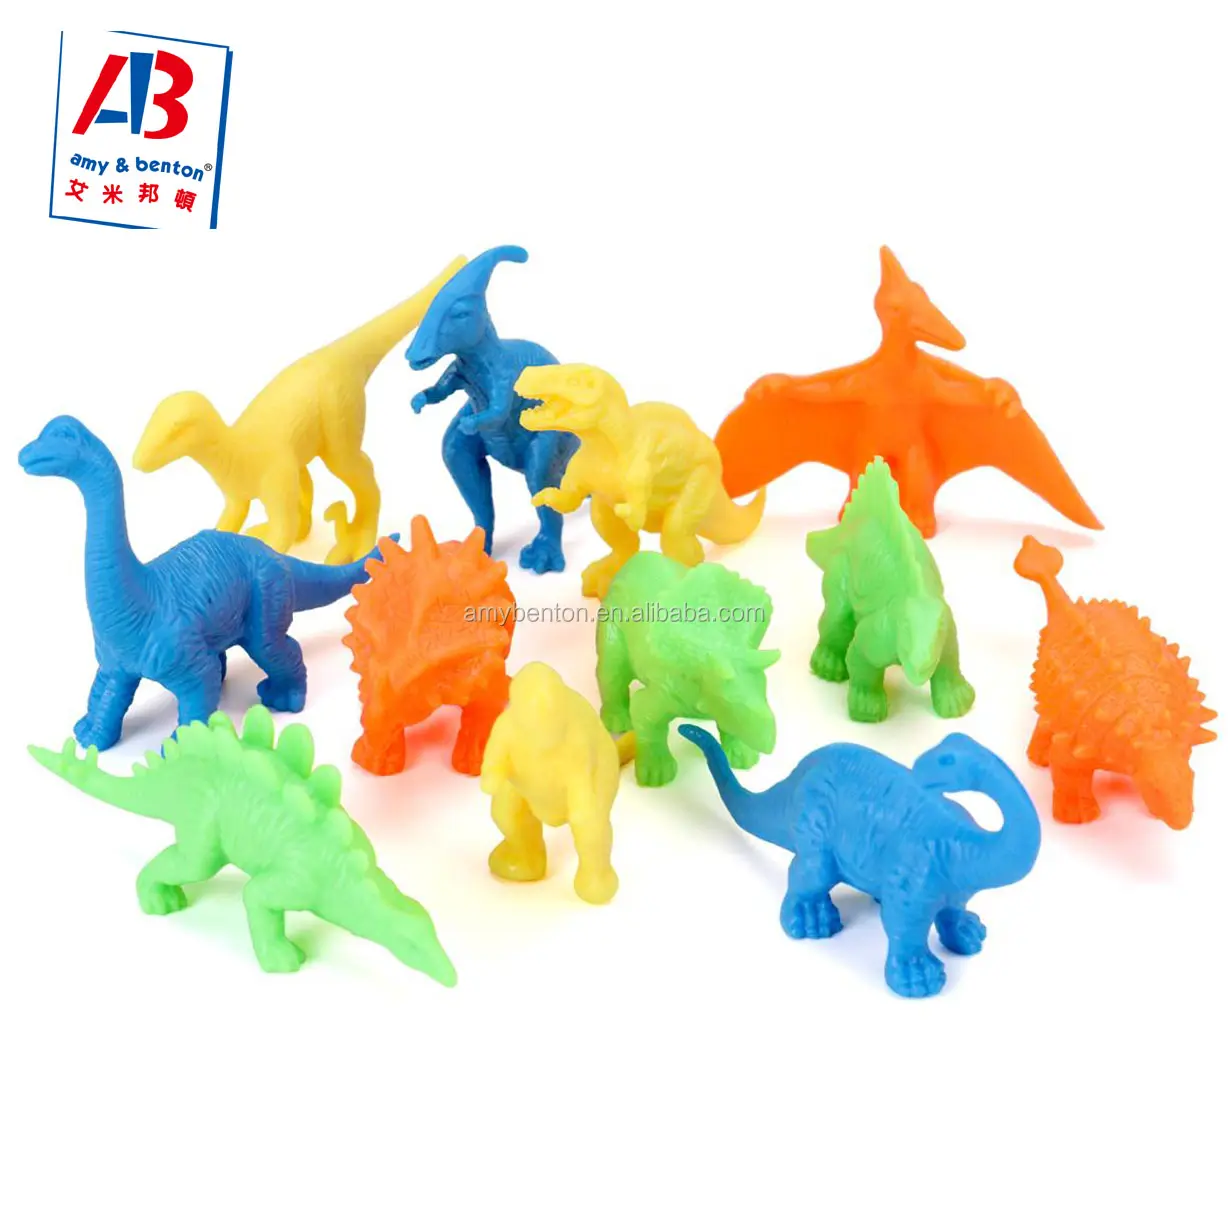 الجملة ديناصور حزب البسيطة أرقام ديناصور لعب للأطفال